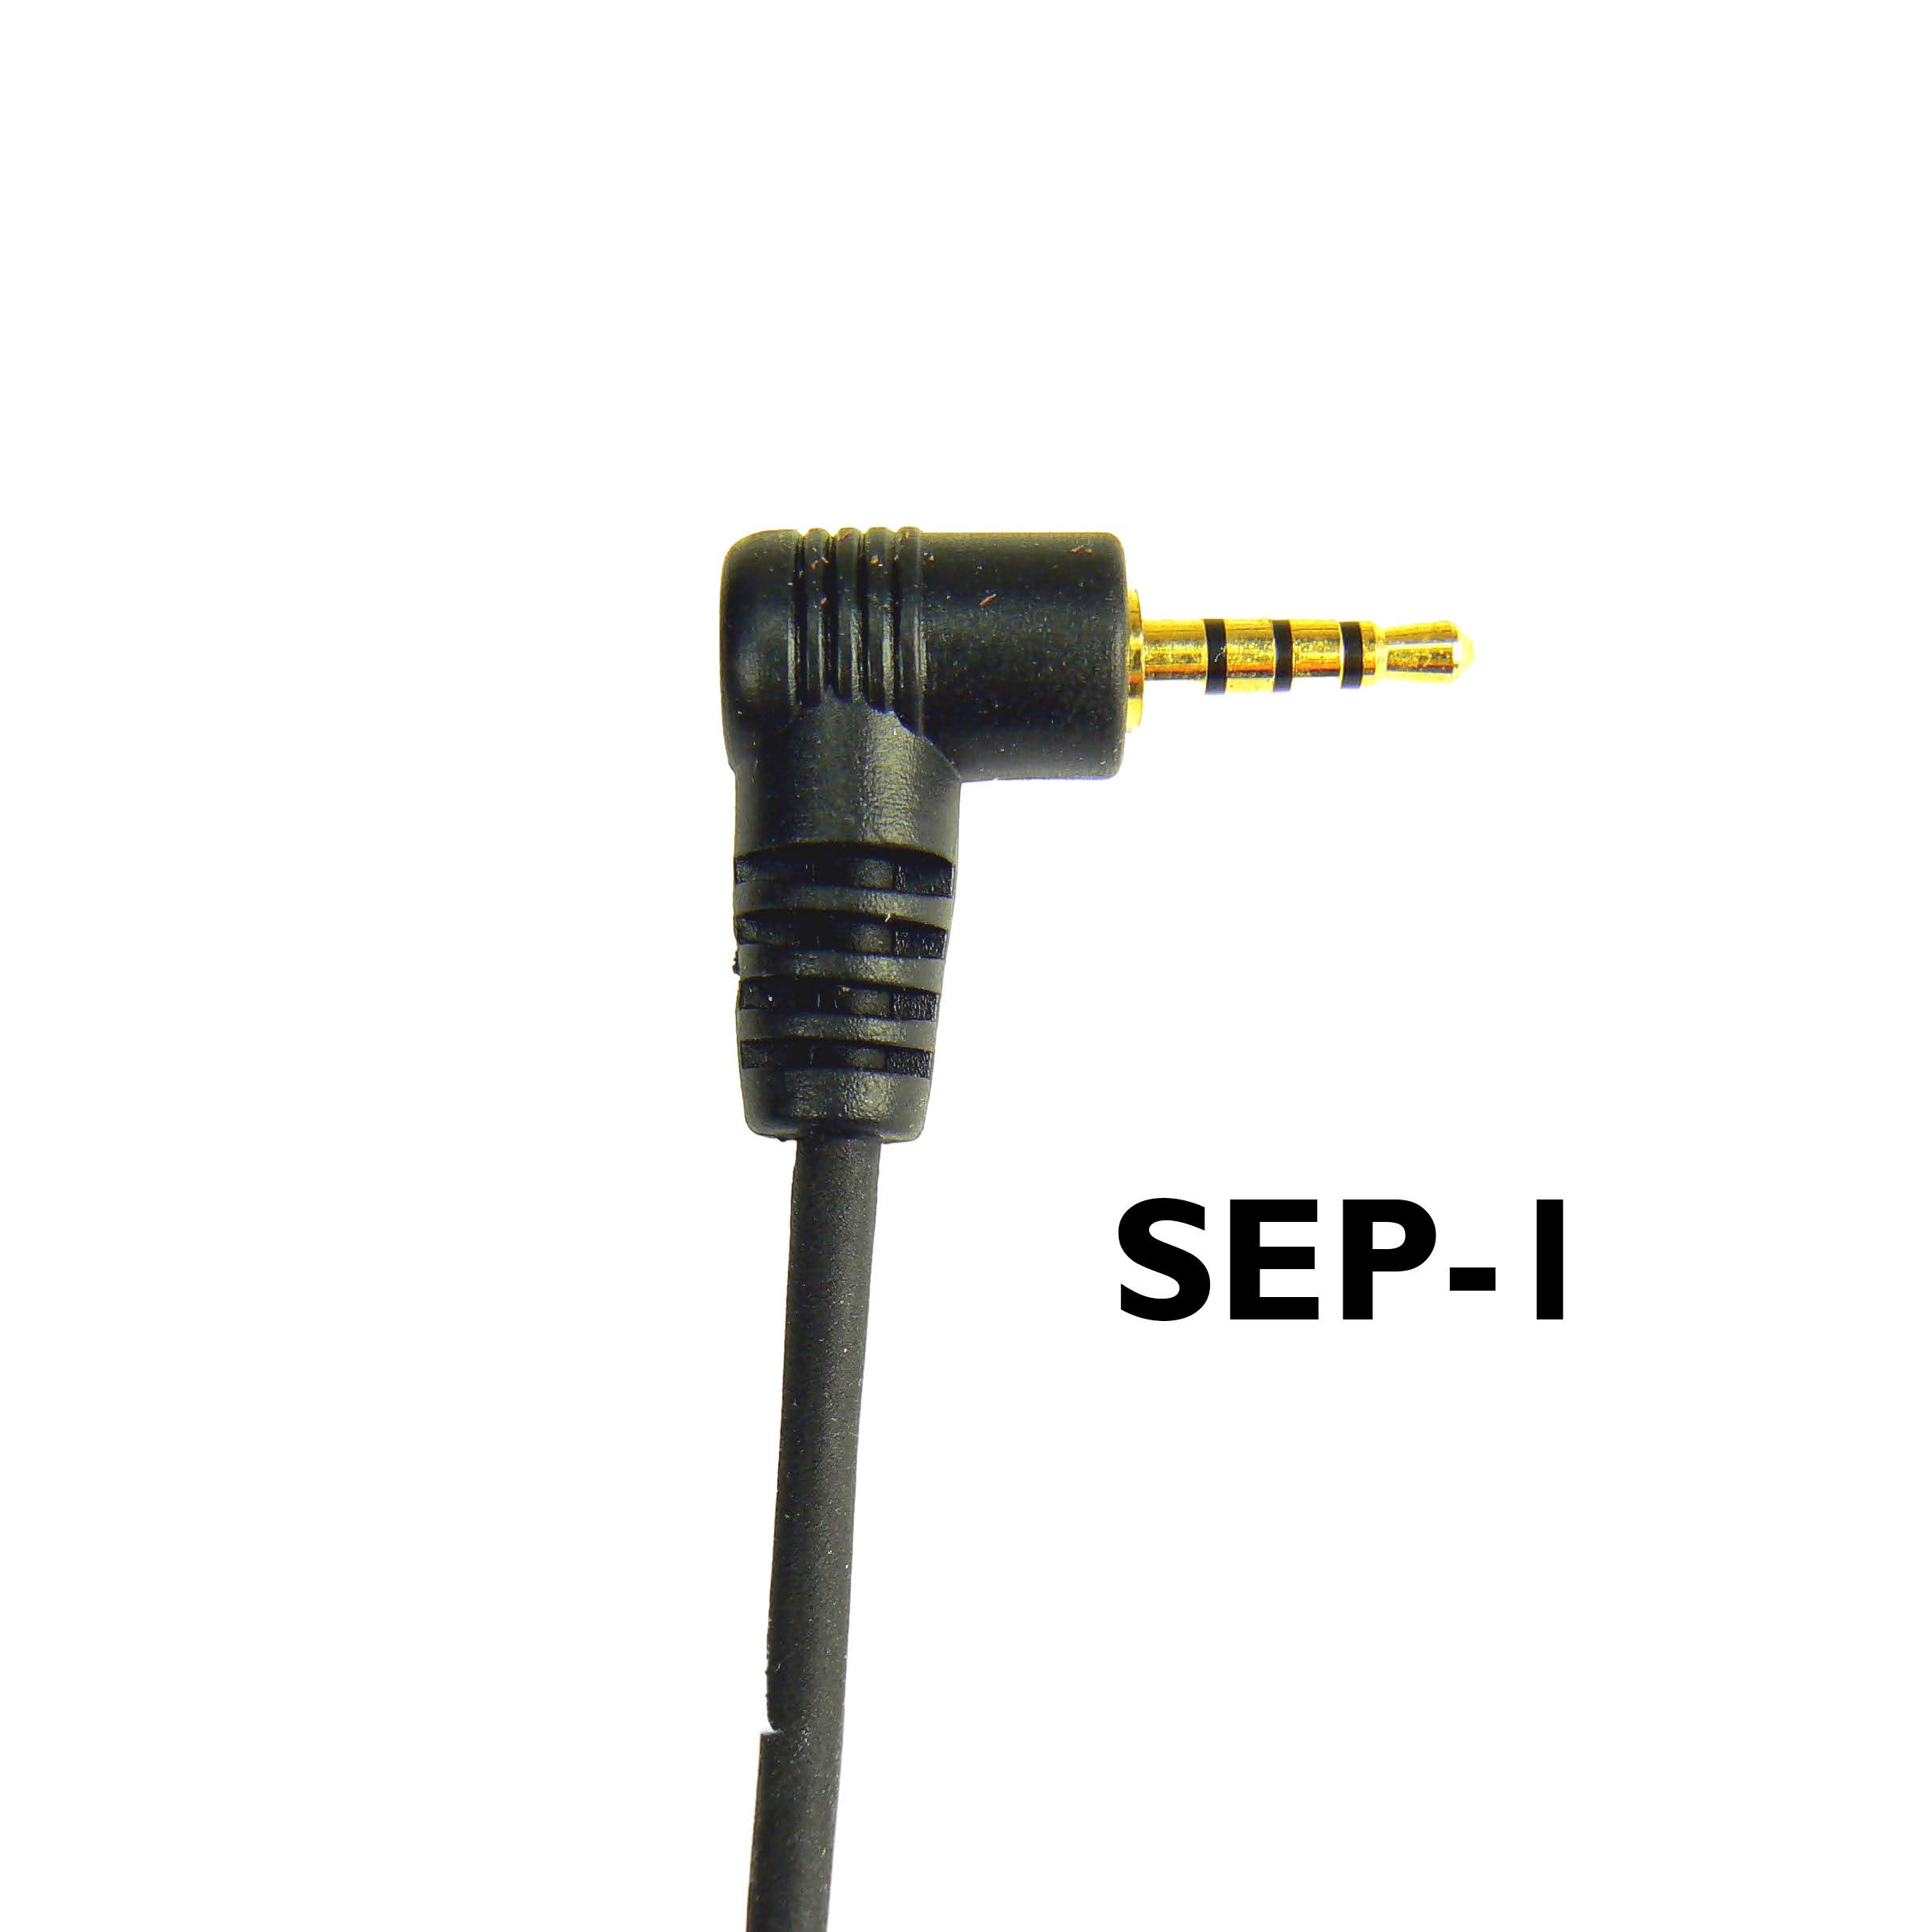 Sepura Tetra Radio single pin jack SEP1